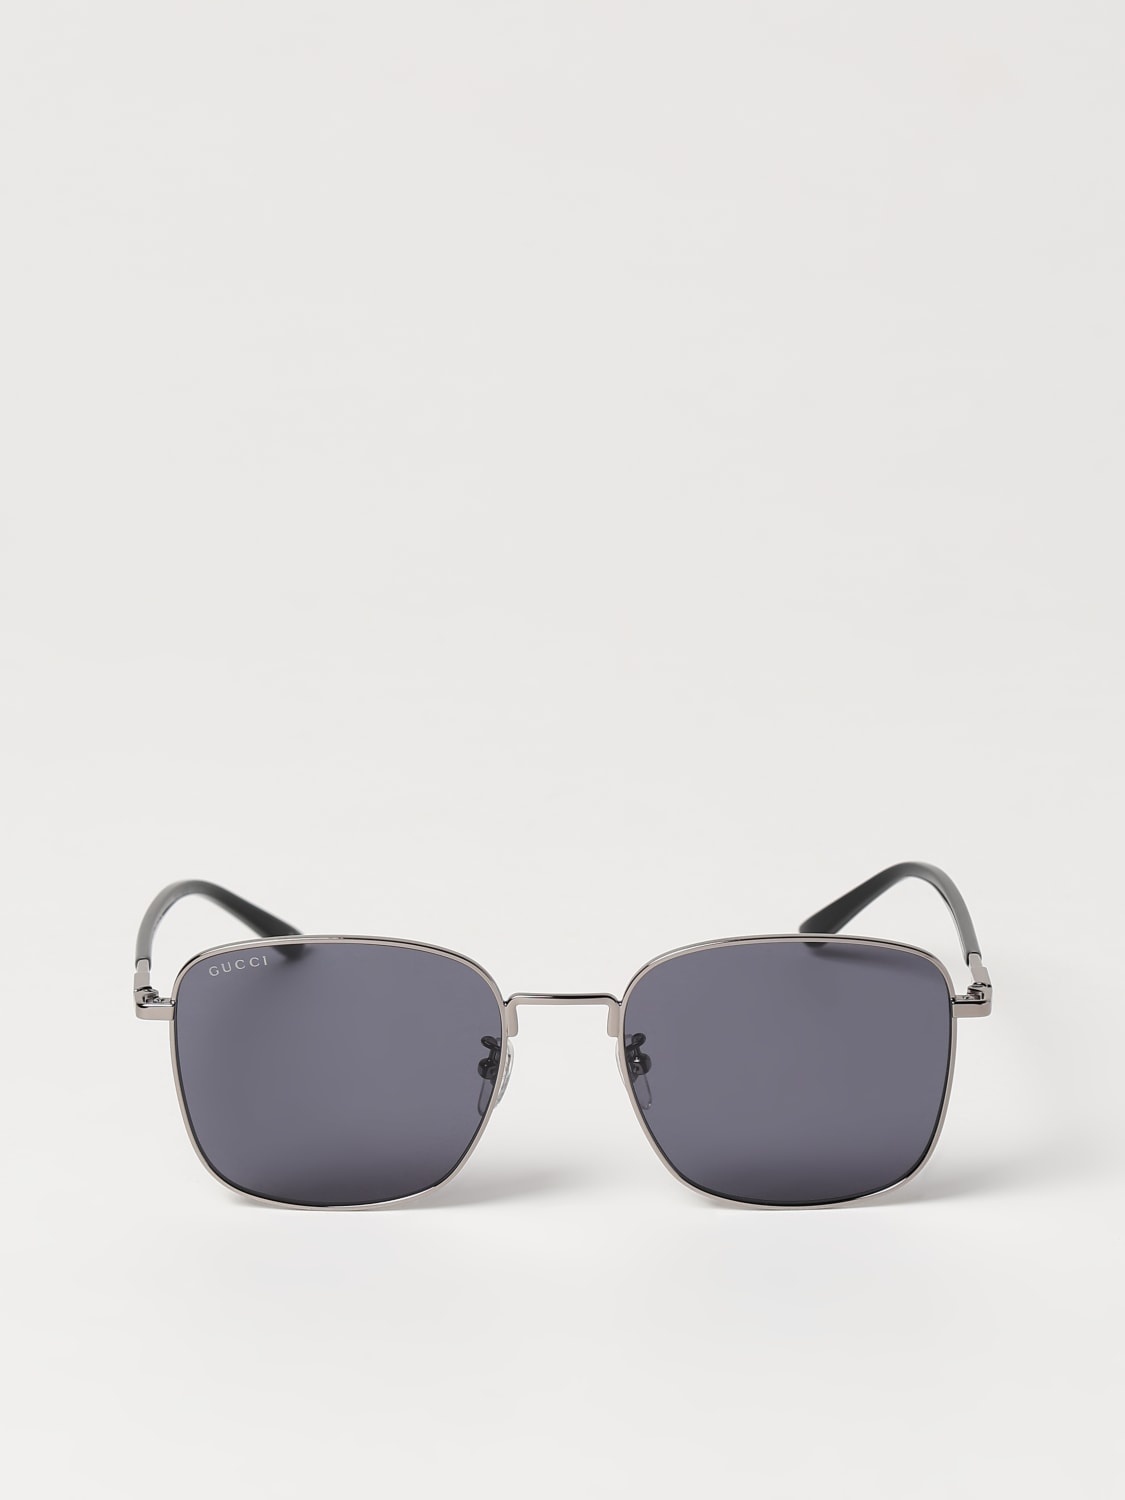 Sunglasses men Gucci - 3